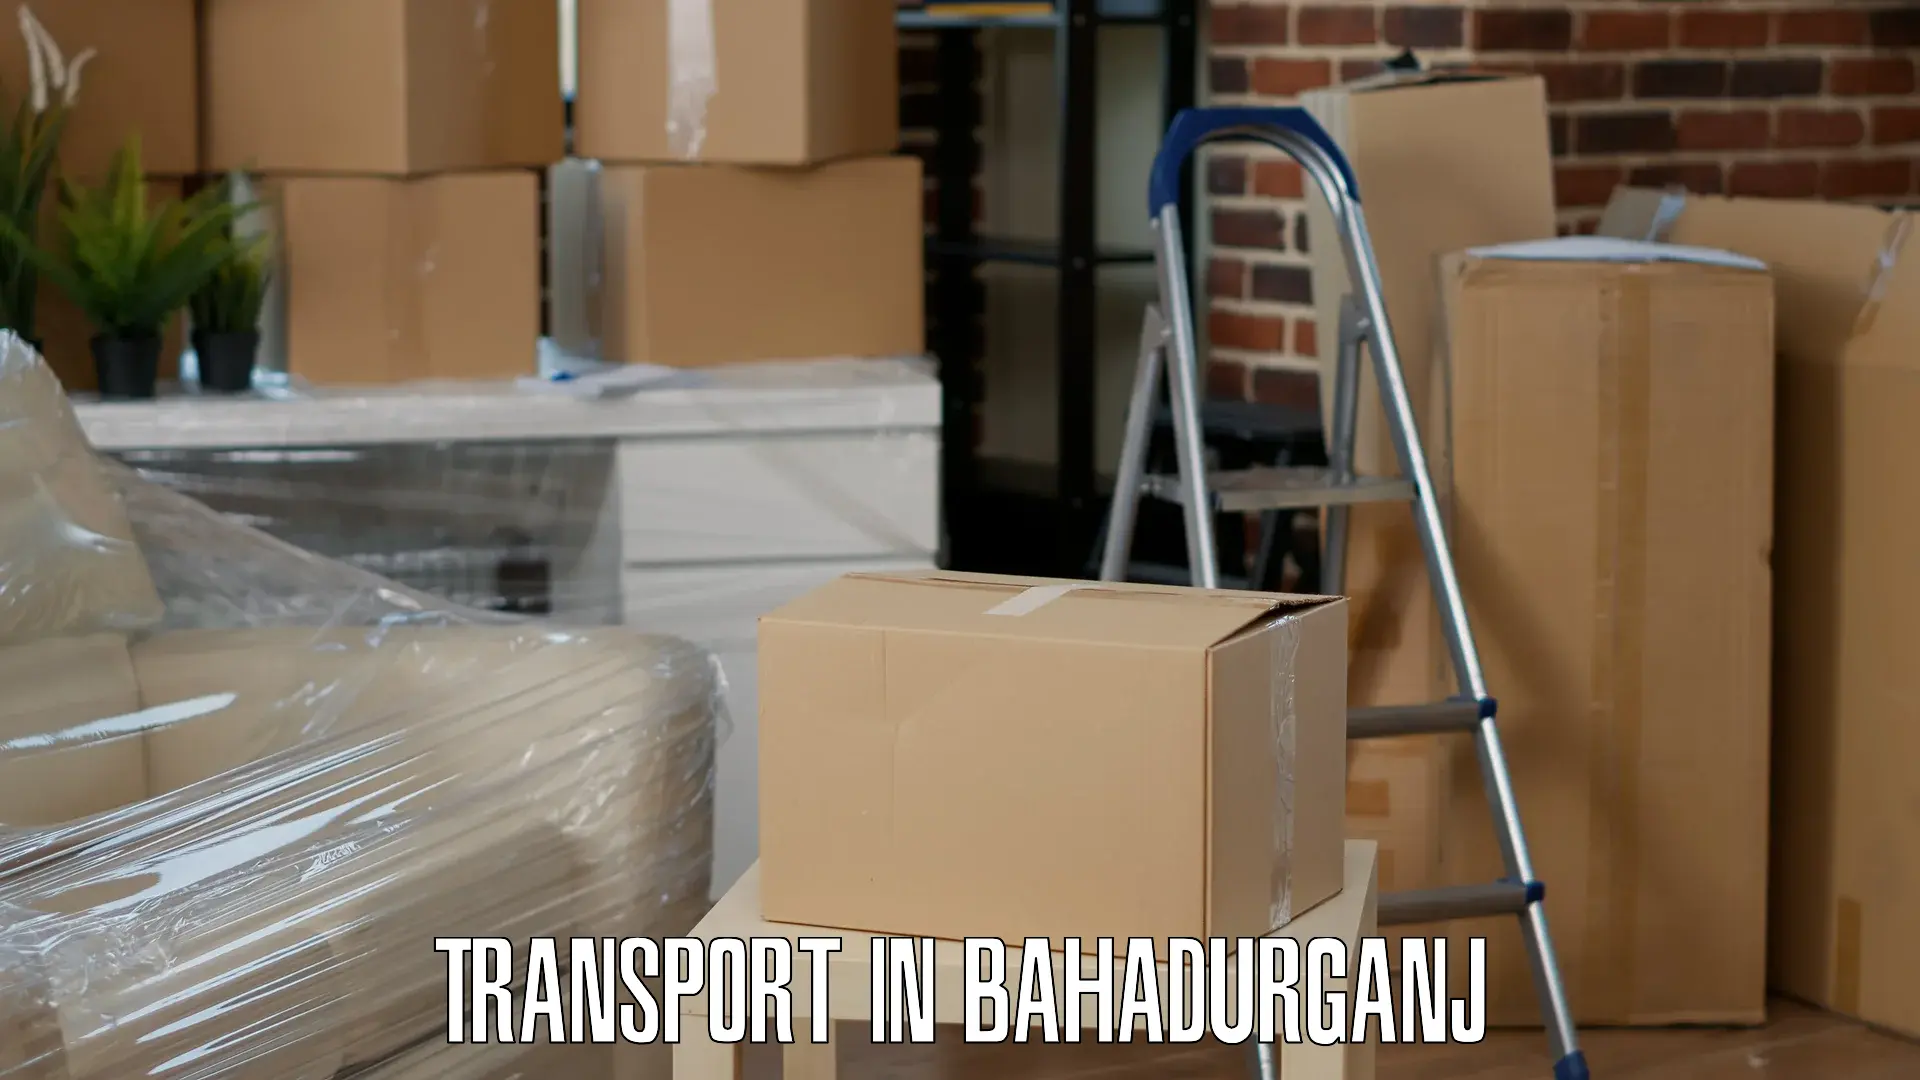 Shipping partner in Bahadurganj